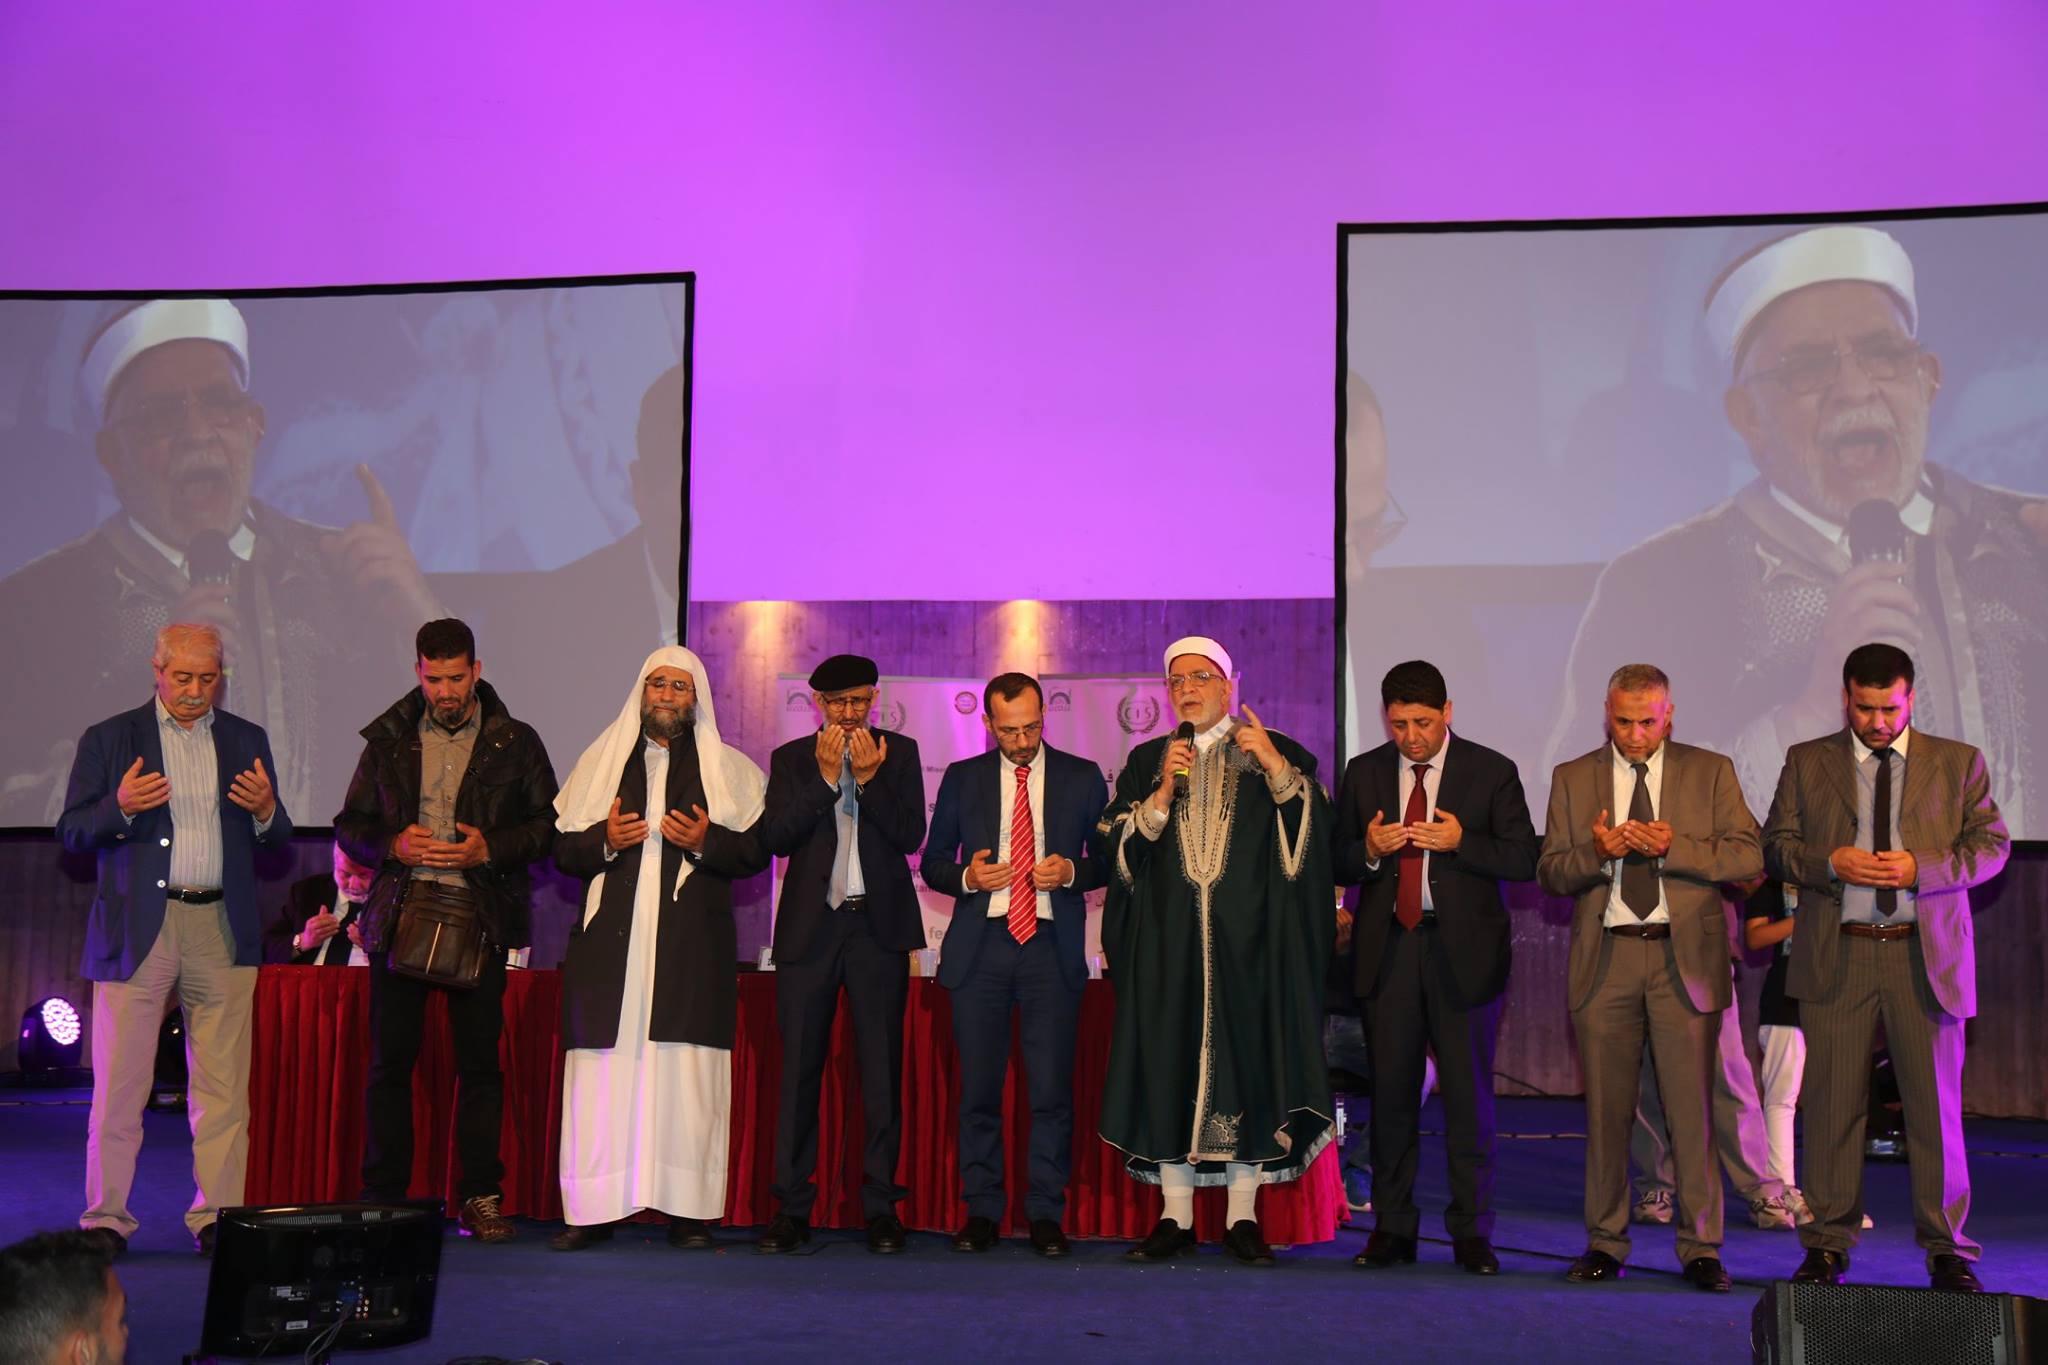 Sn. Adnan Oktar’ın Sicilya’da düzenlenen “İslam ve Barış” konulu konferanstaki konuşması 